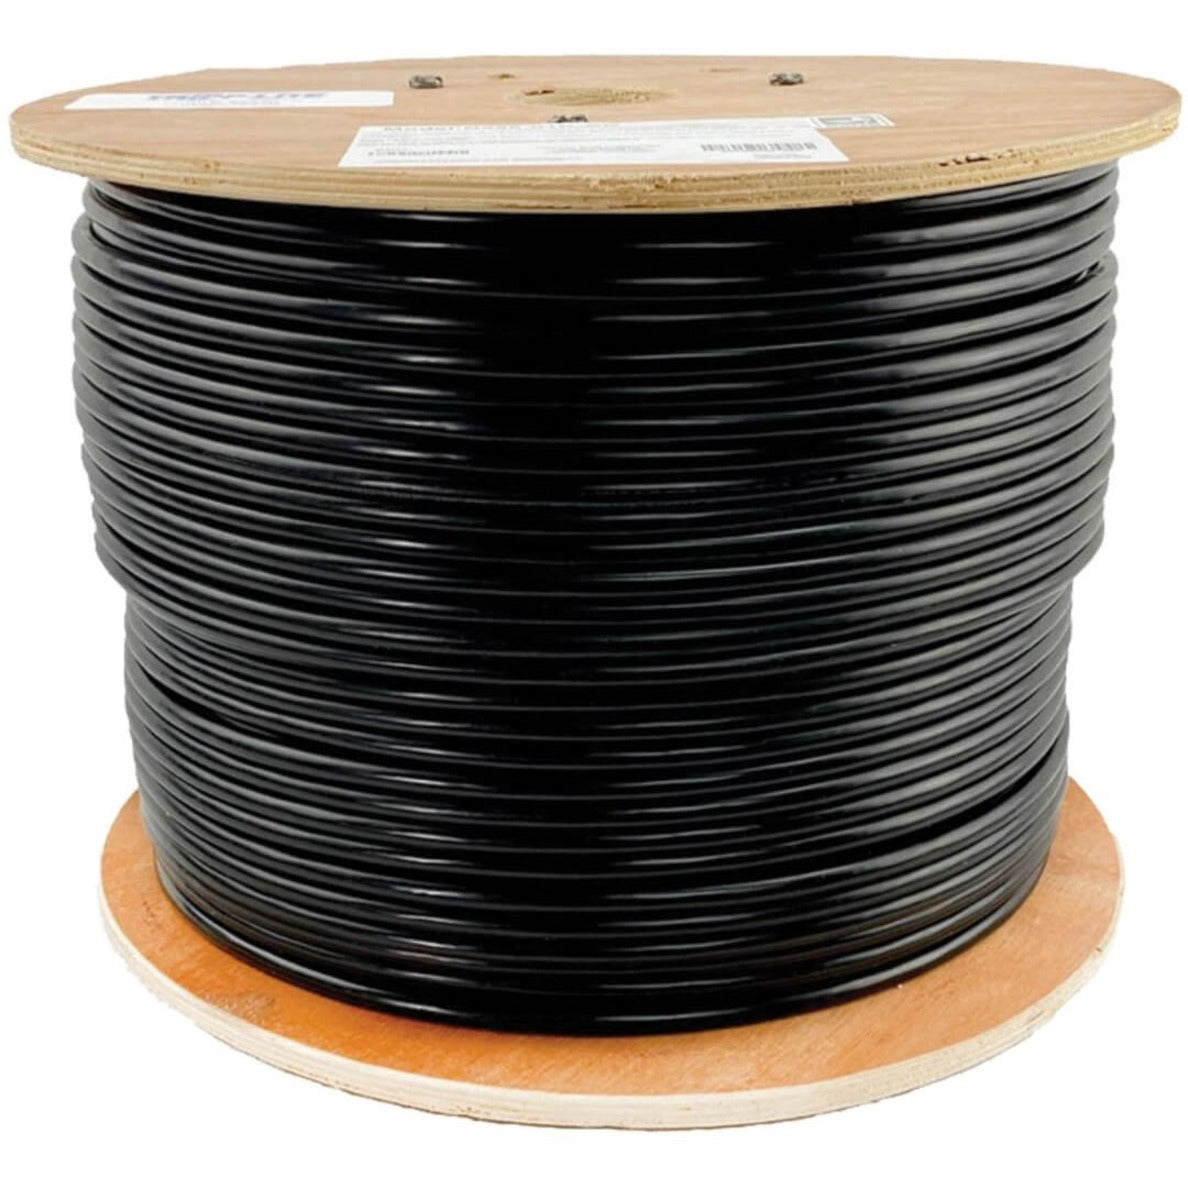 Tripp Lite Cat6 Gigabit Bulk Solid-Core PVC Cable - Black, 1000 ft